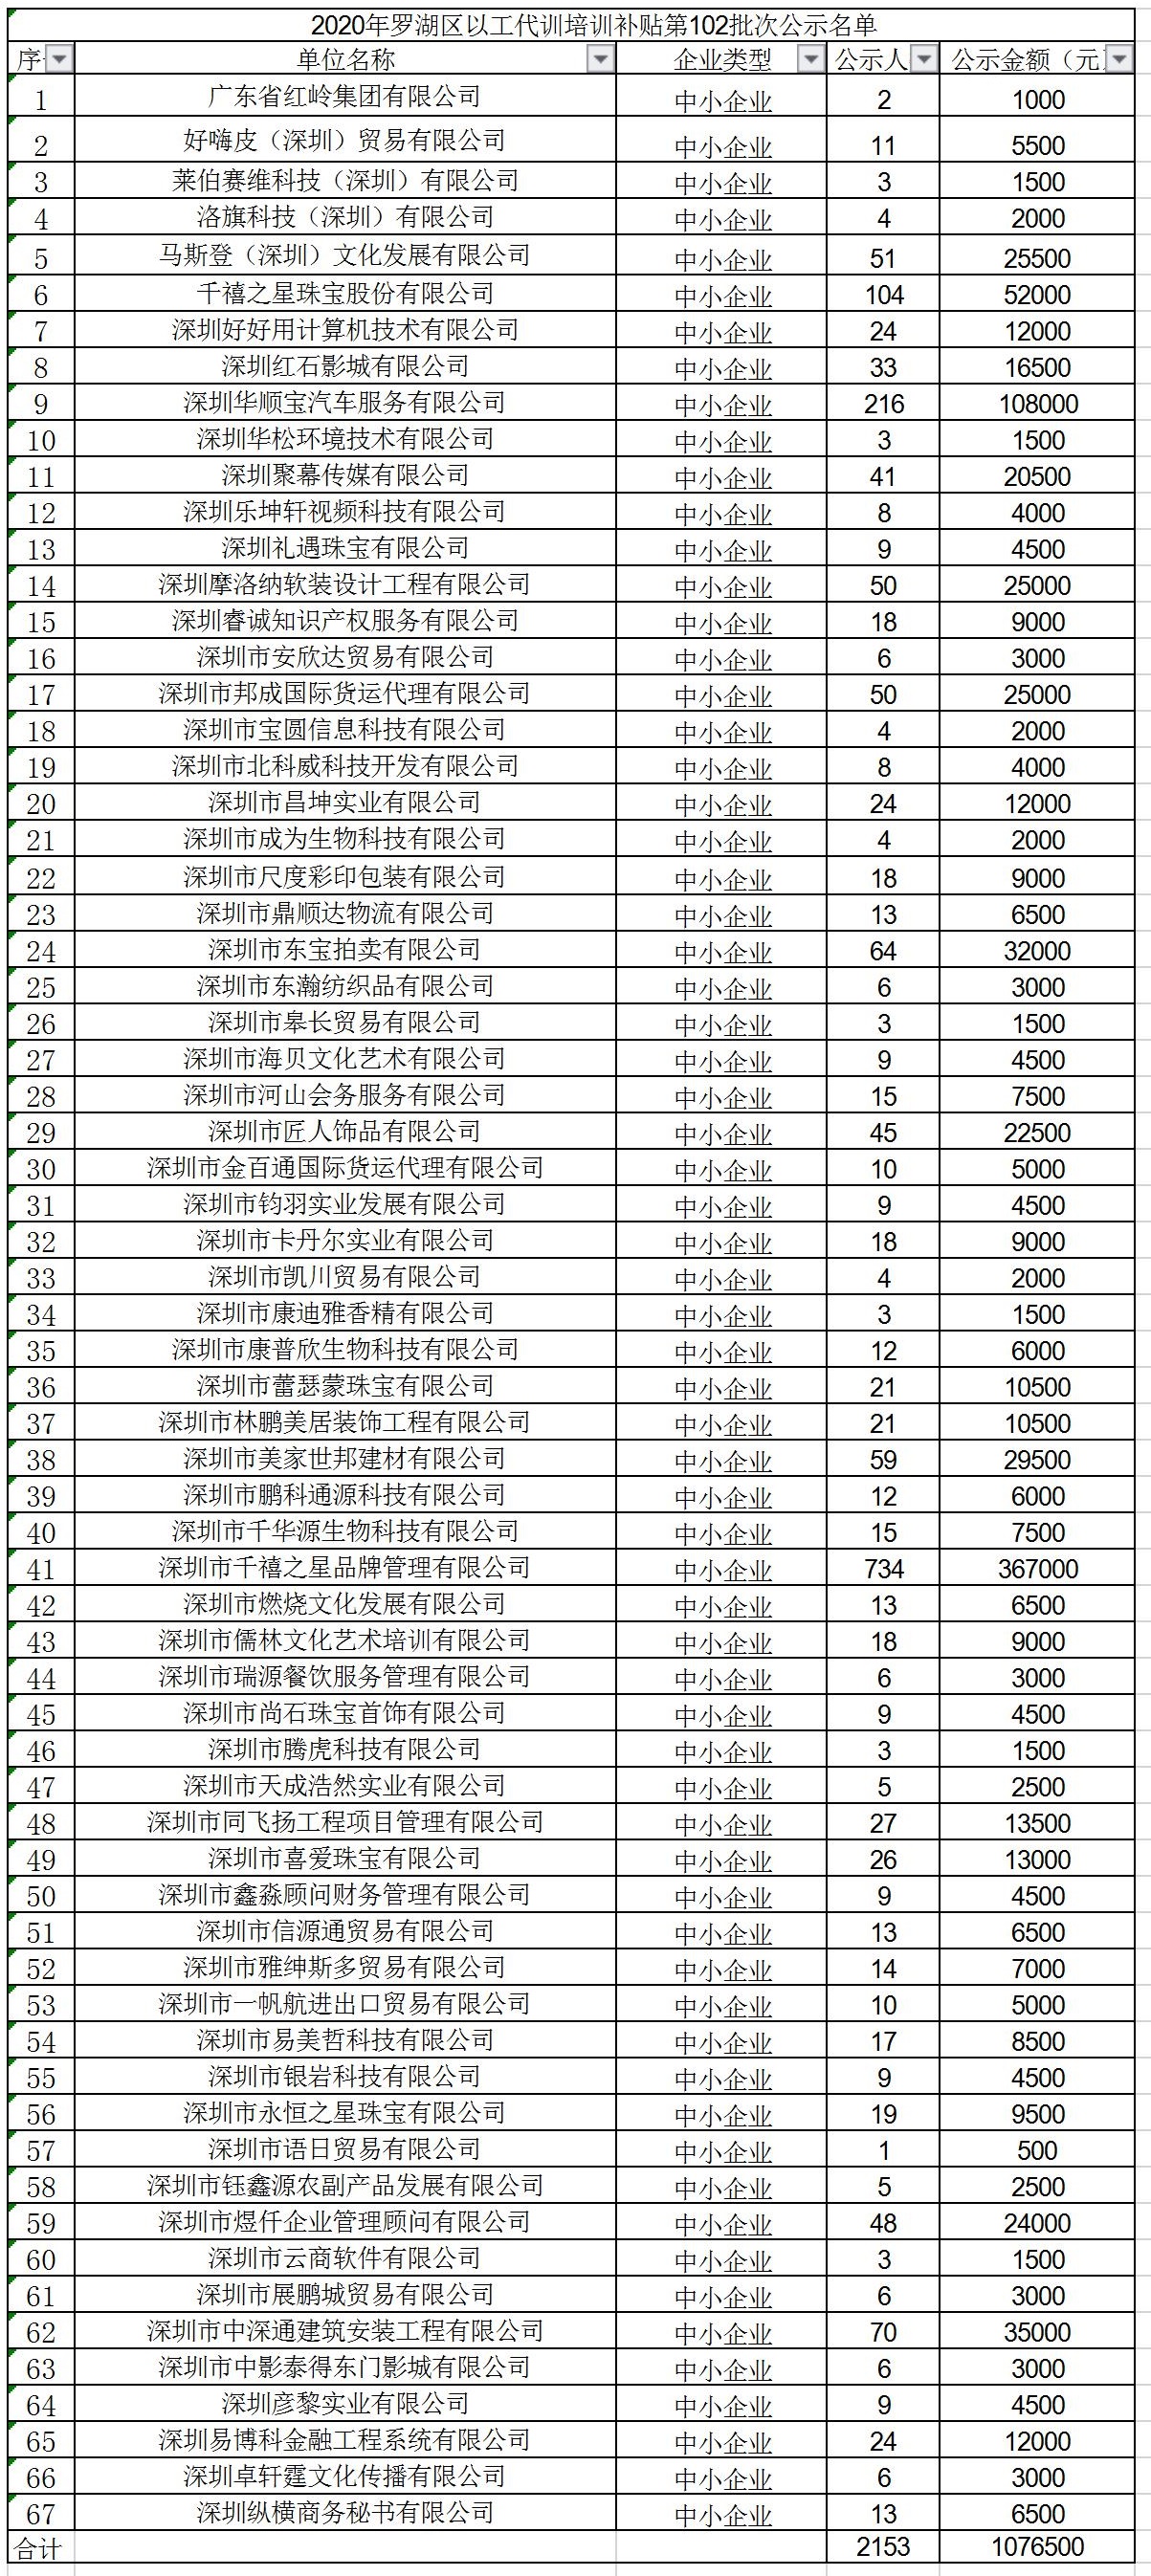 2020年深圳市罗湖区以工代训培训补贴第102批次公示名单.jpg